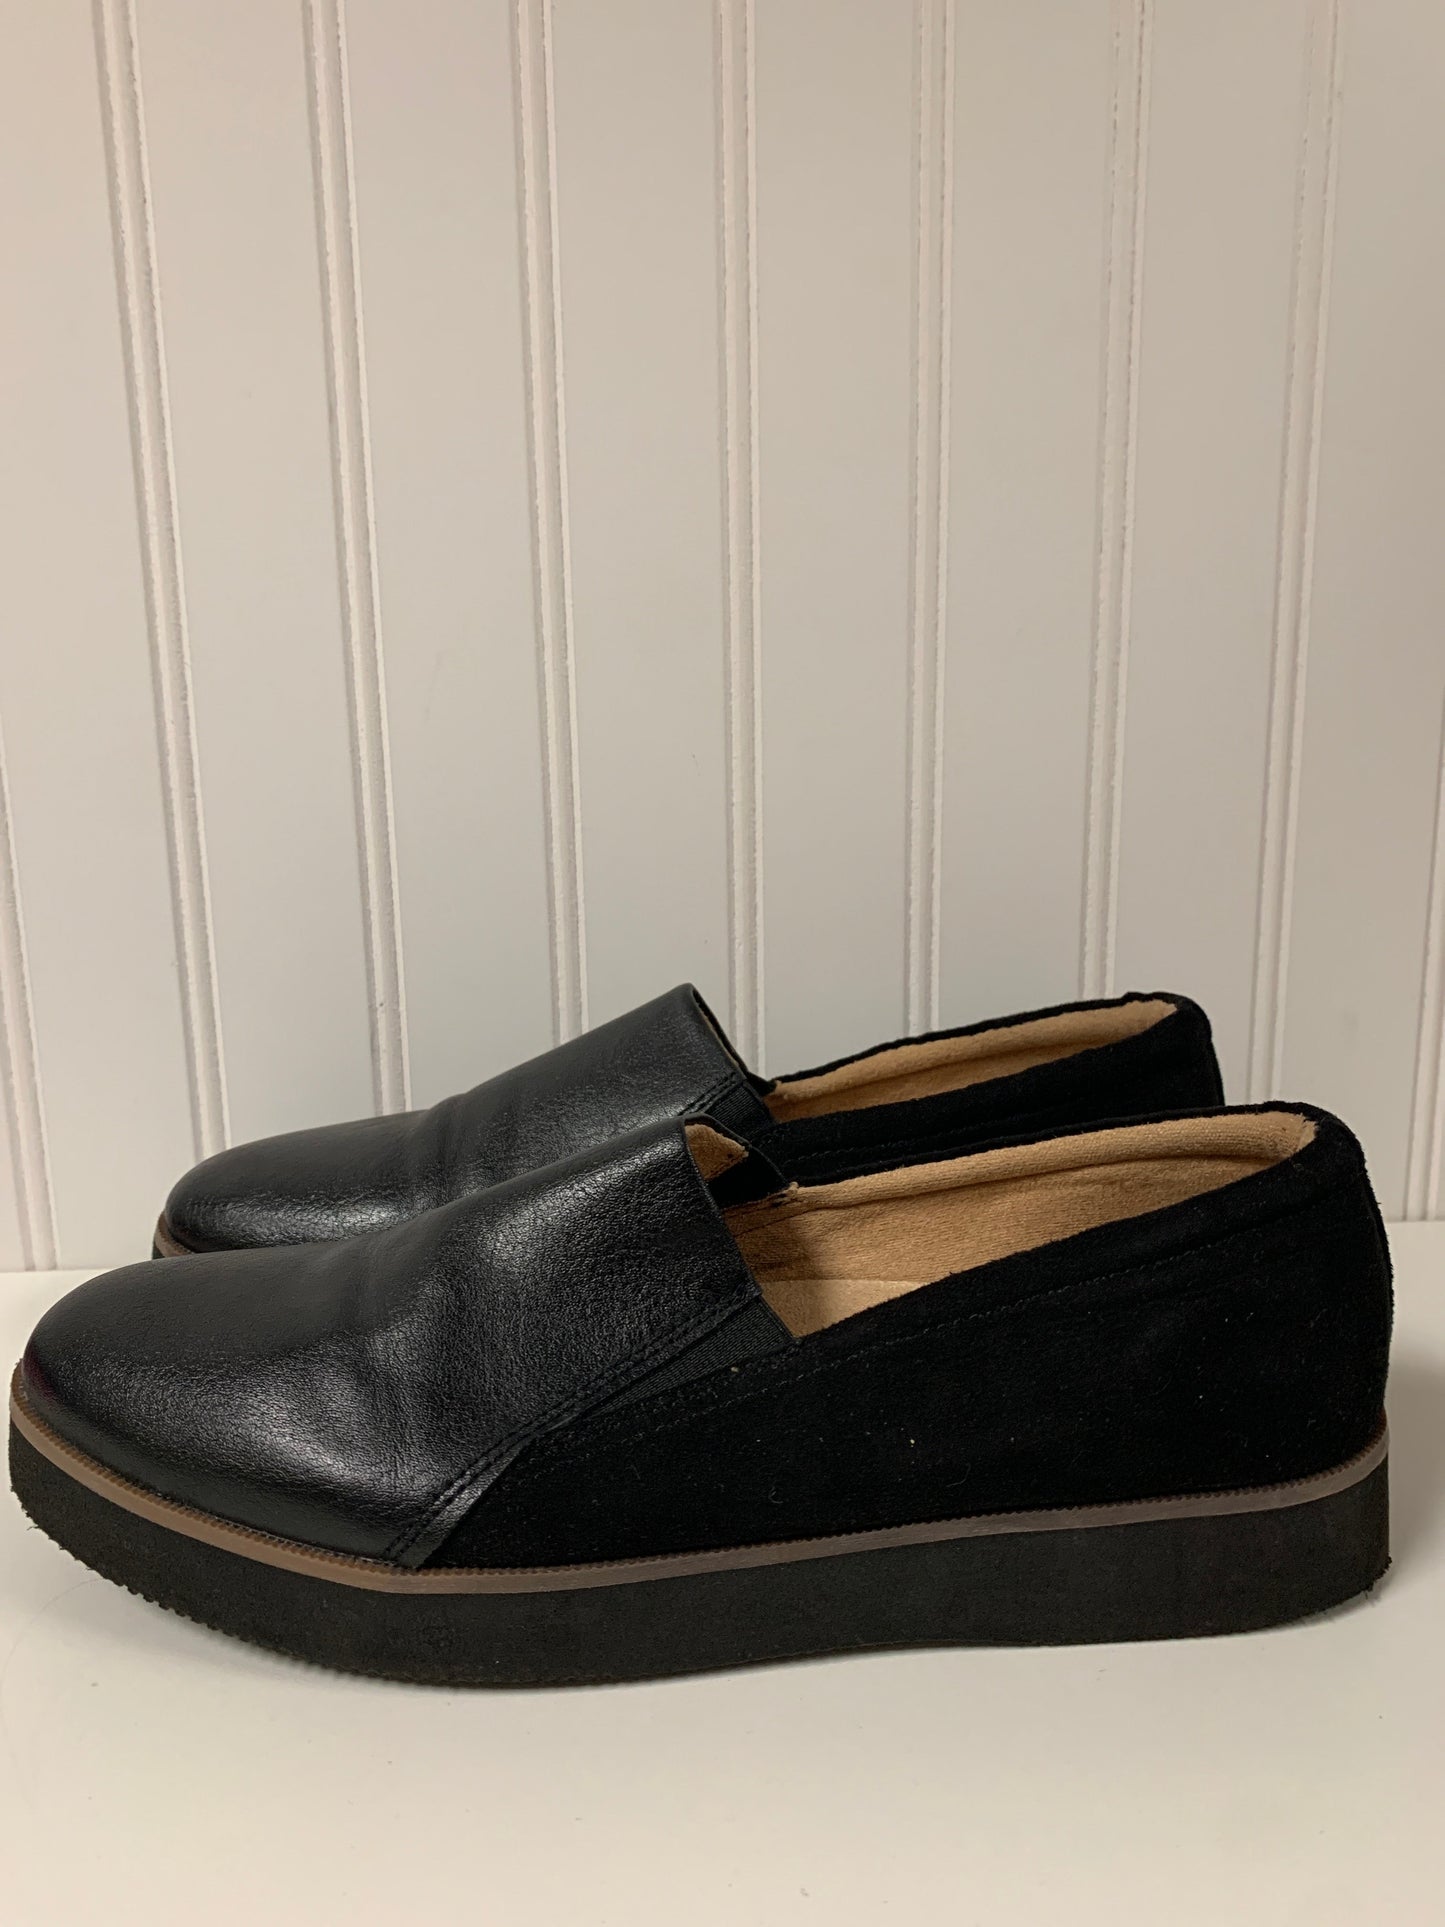 Black Shoes Flats Naturalizer, Size 8.5